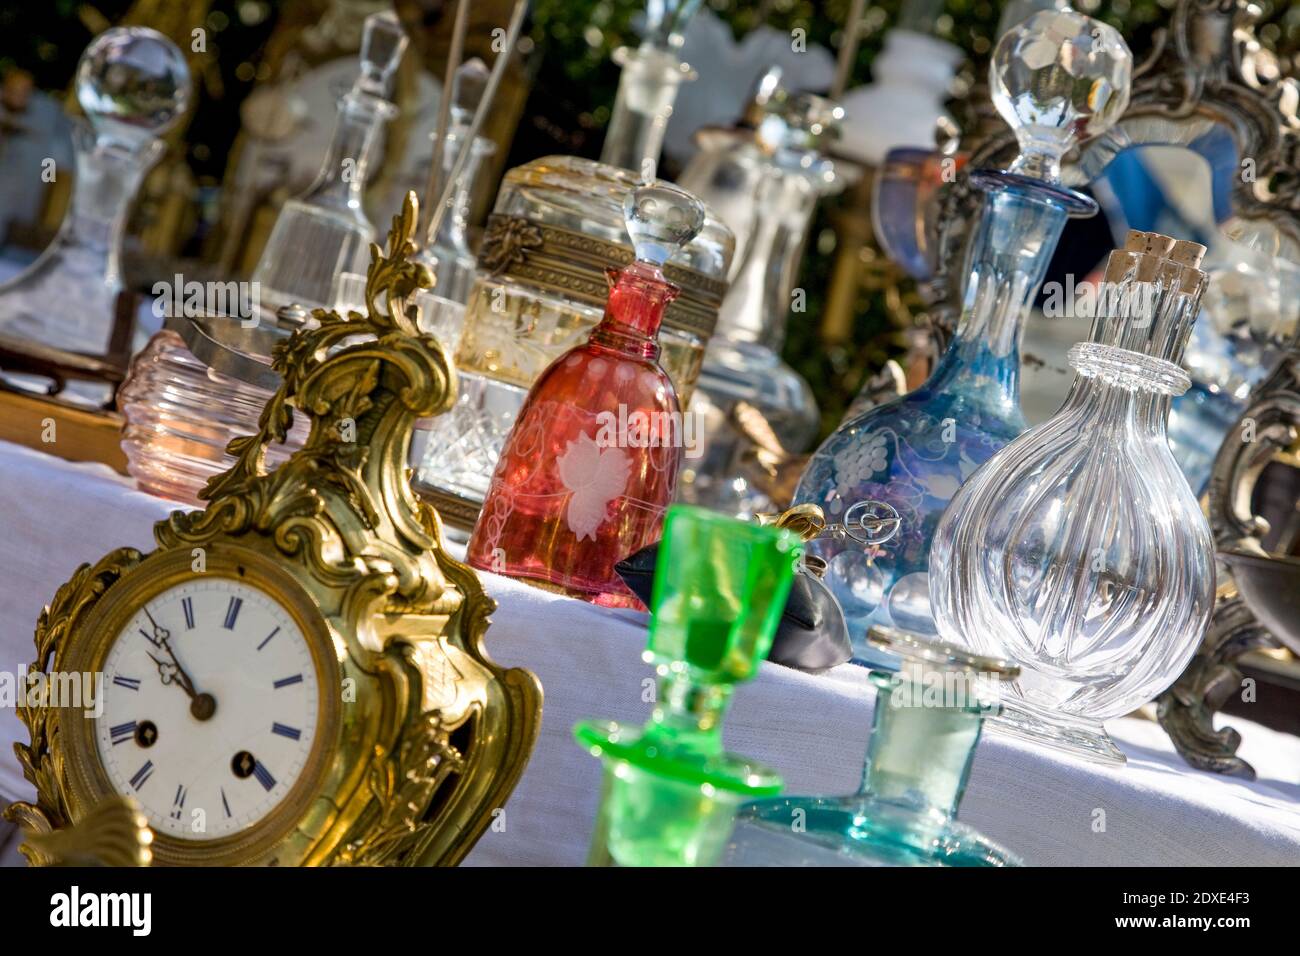 Schweiz, Zürich, Flohmarkt Bürkliplatz, Marktstand, Antiquitäten, Karaffe, antike Uhr, einkaufen, shopping Stock Photo